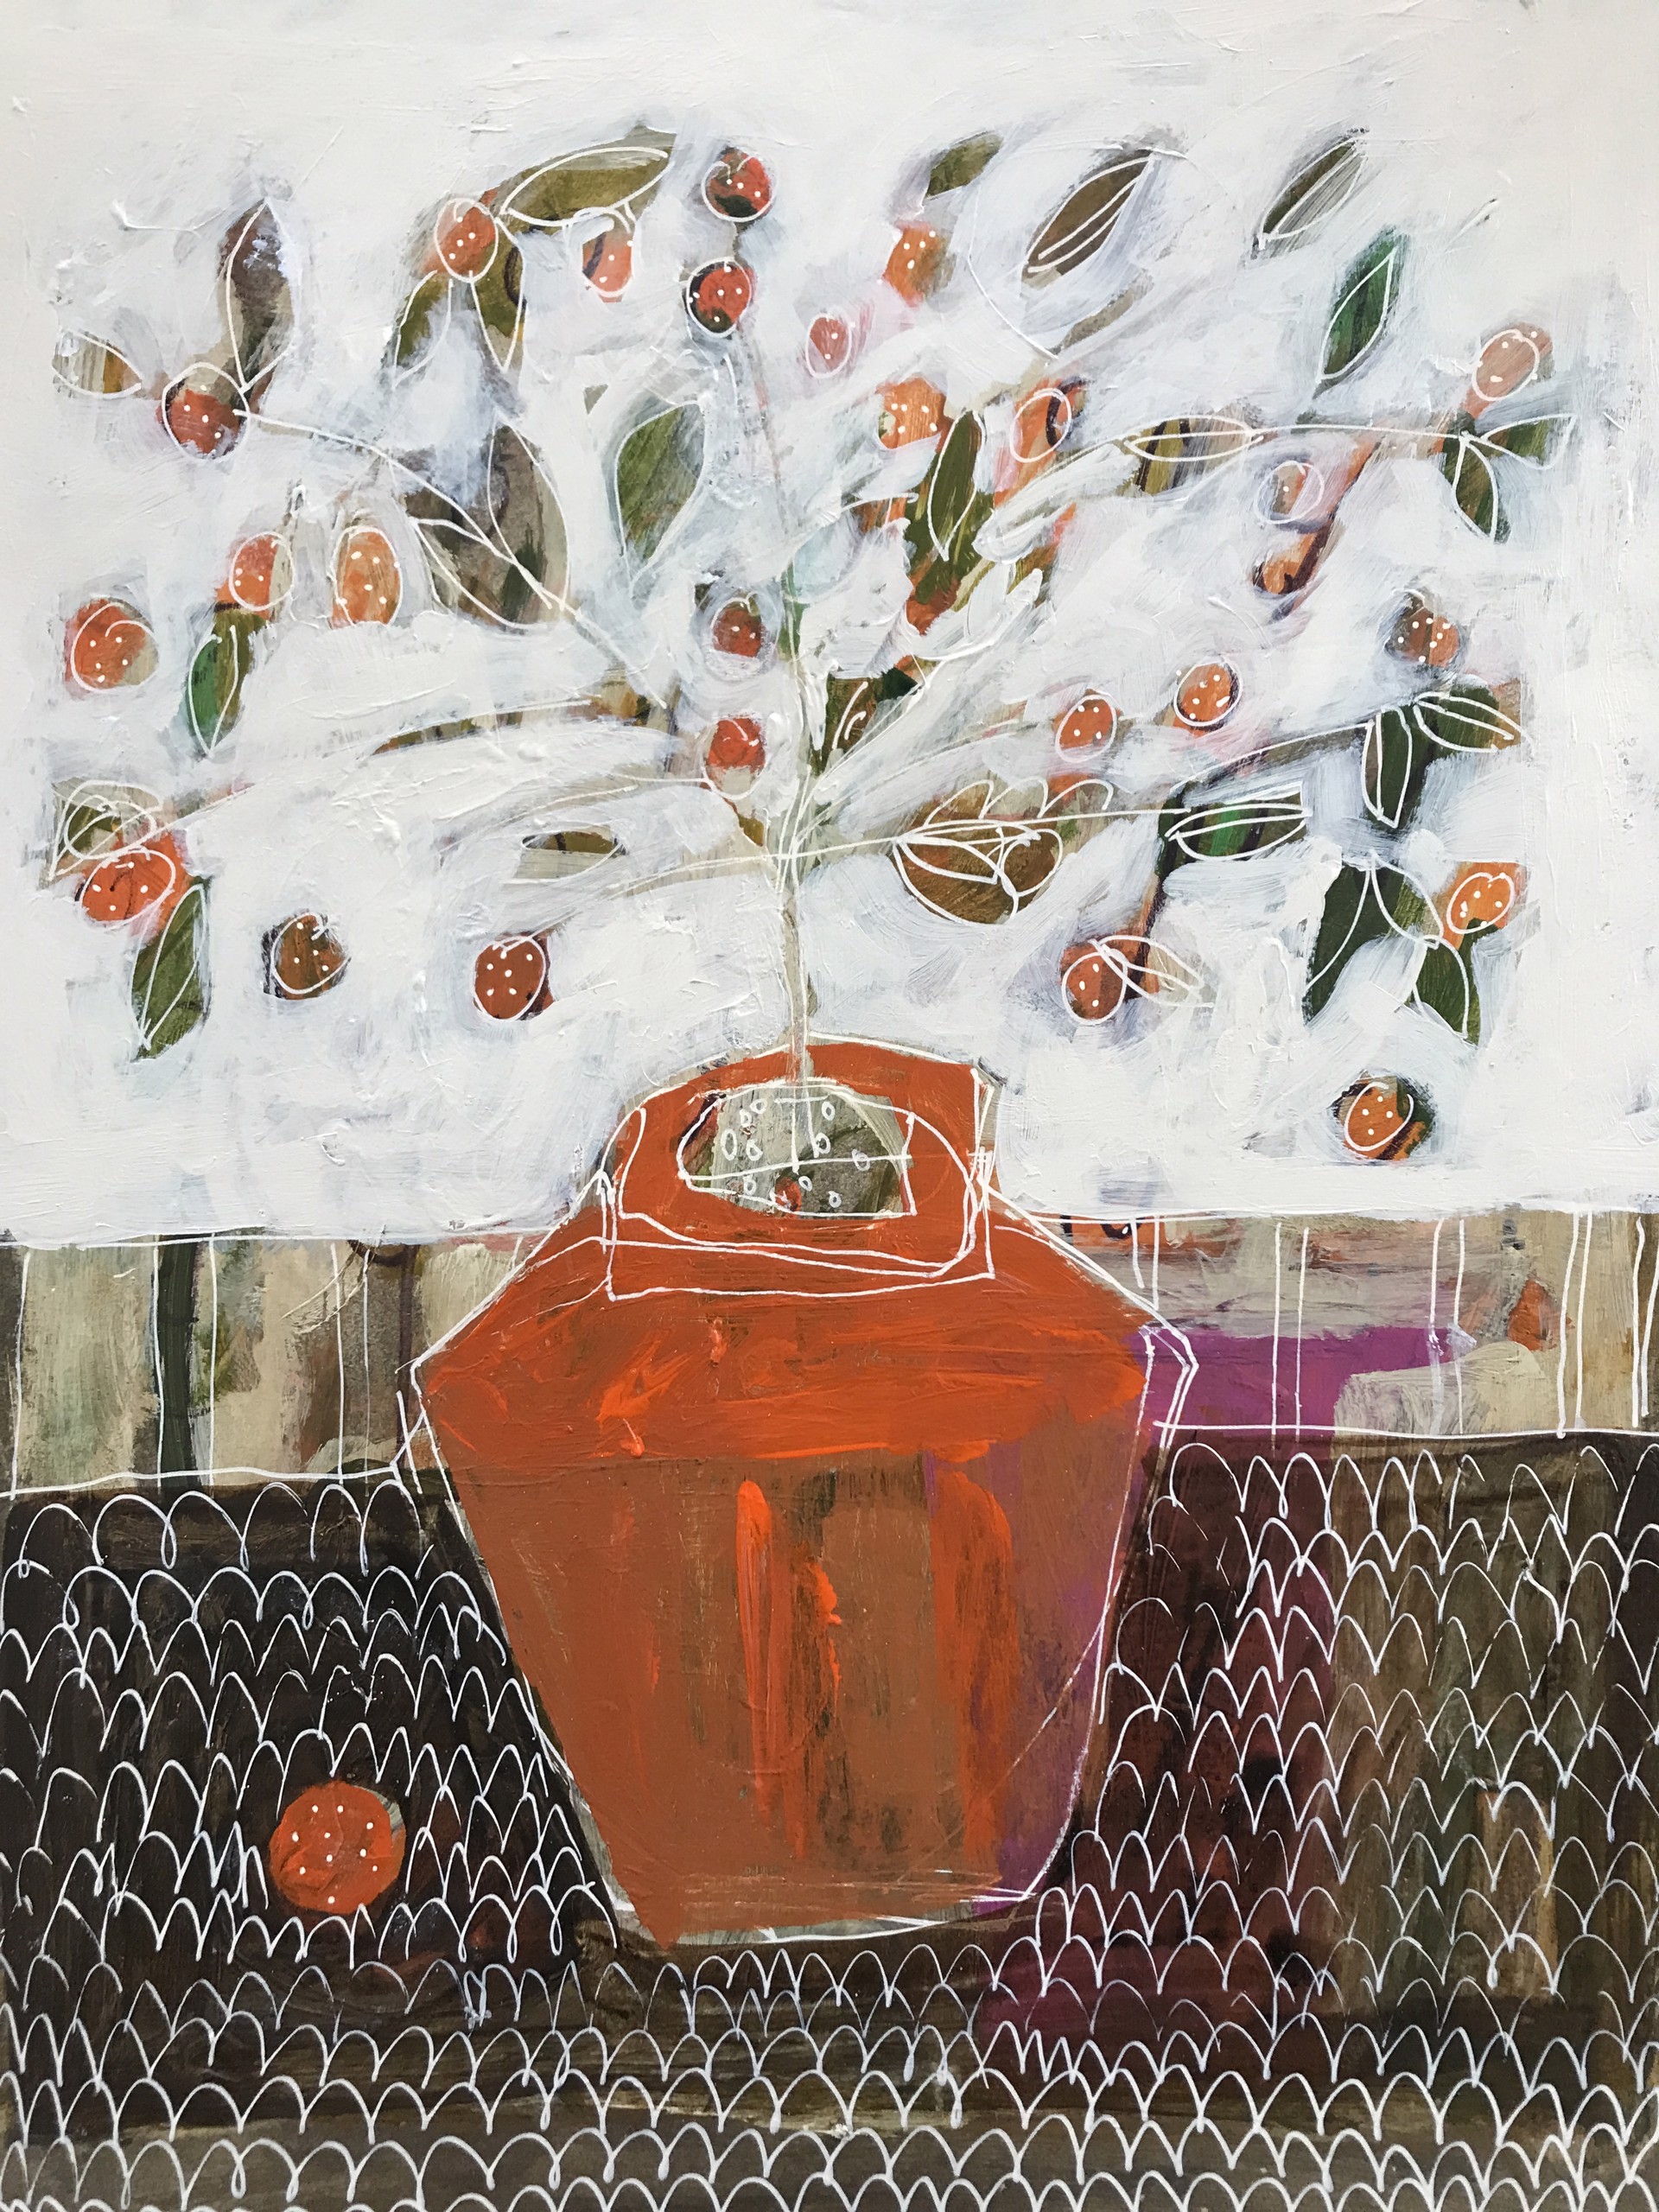 Mandarin Orange Tree in Red Vase by Rachael Van Dyke